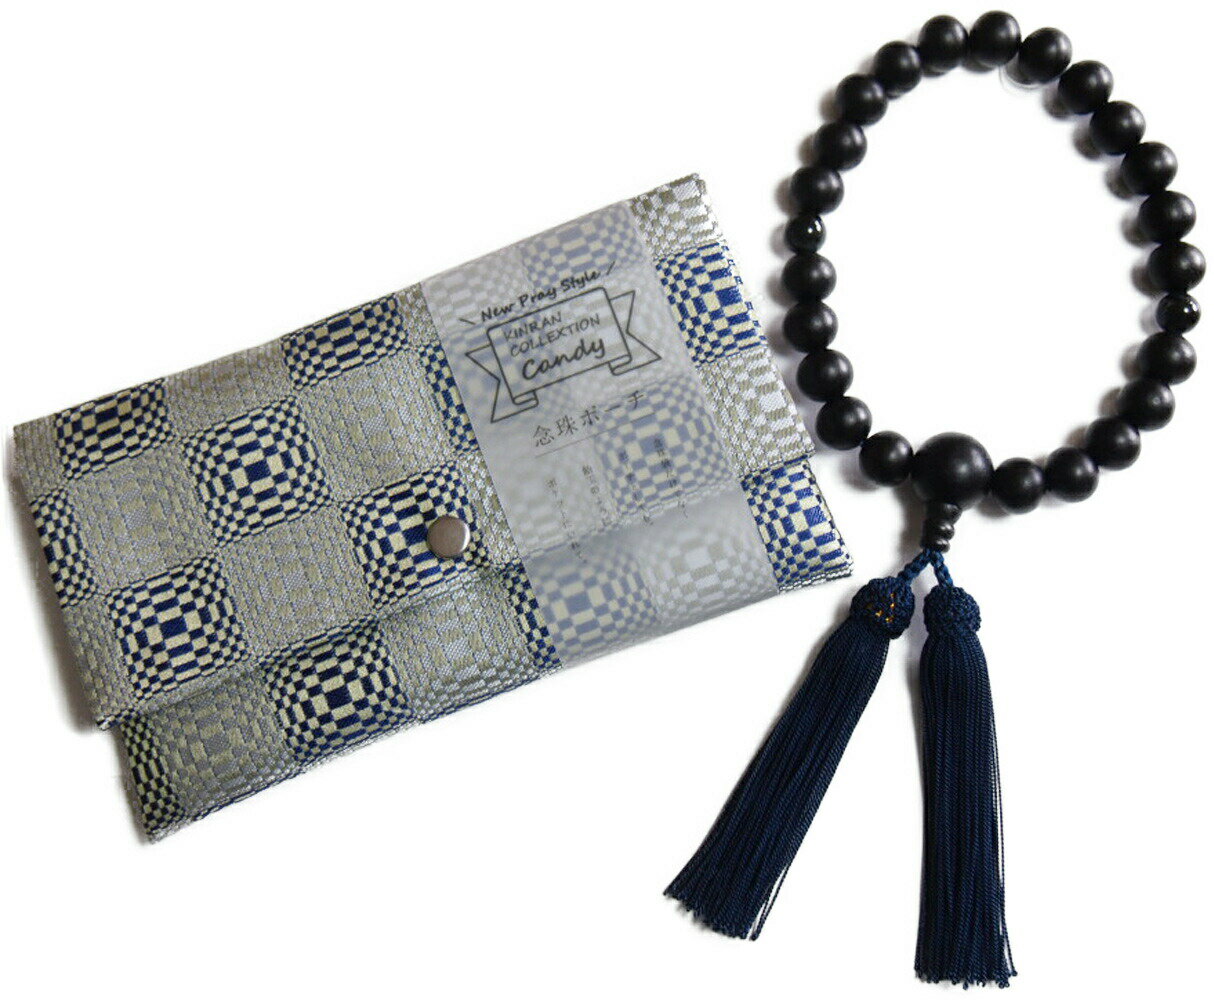 お守り数珠セット 数珠と数珠入れのセット パワーストーン使用 日本製 男性向け